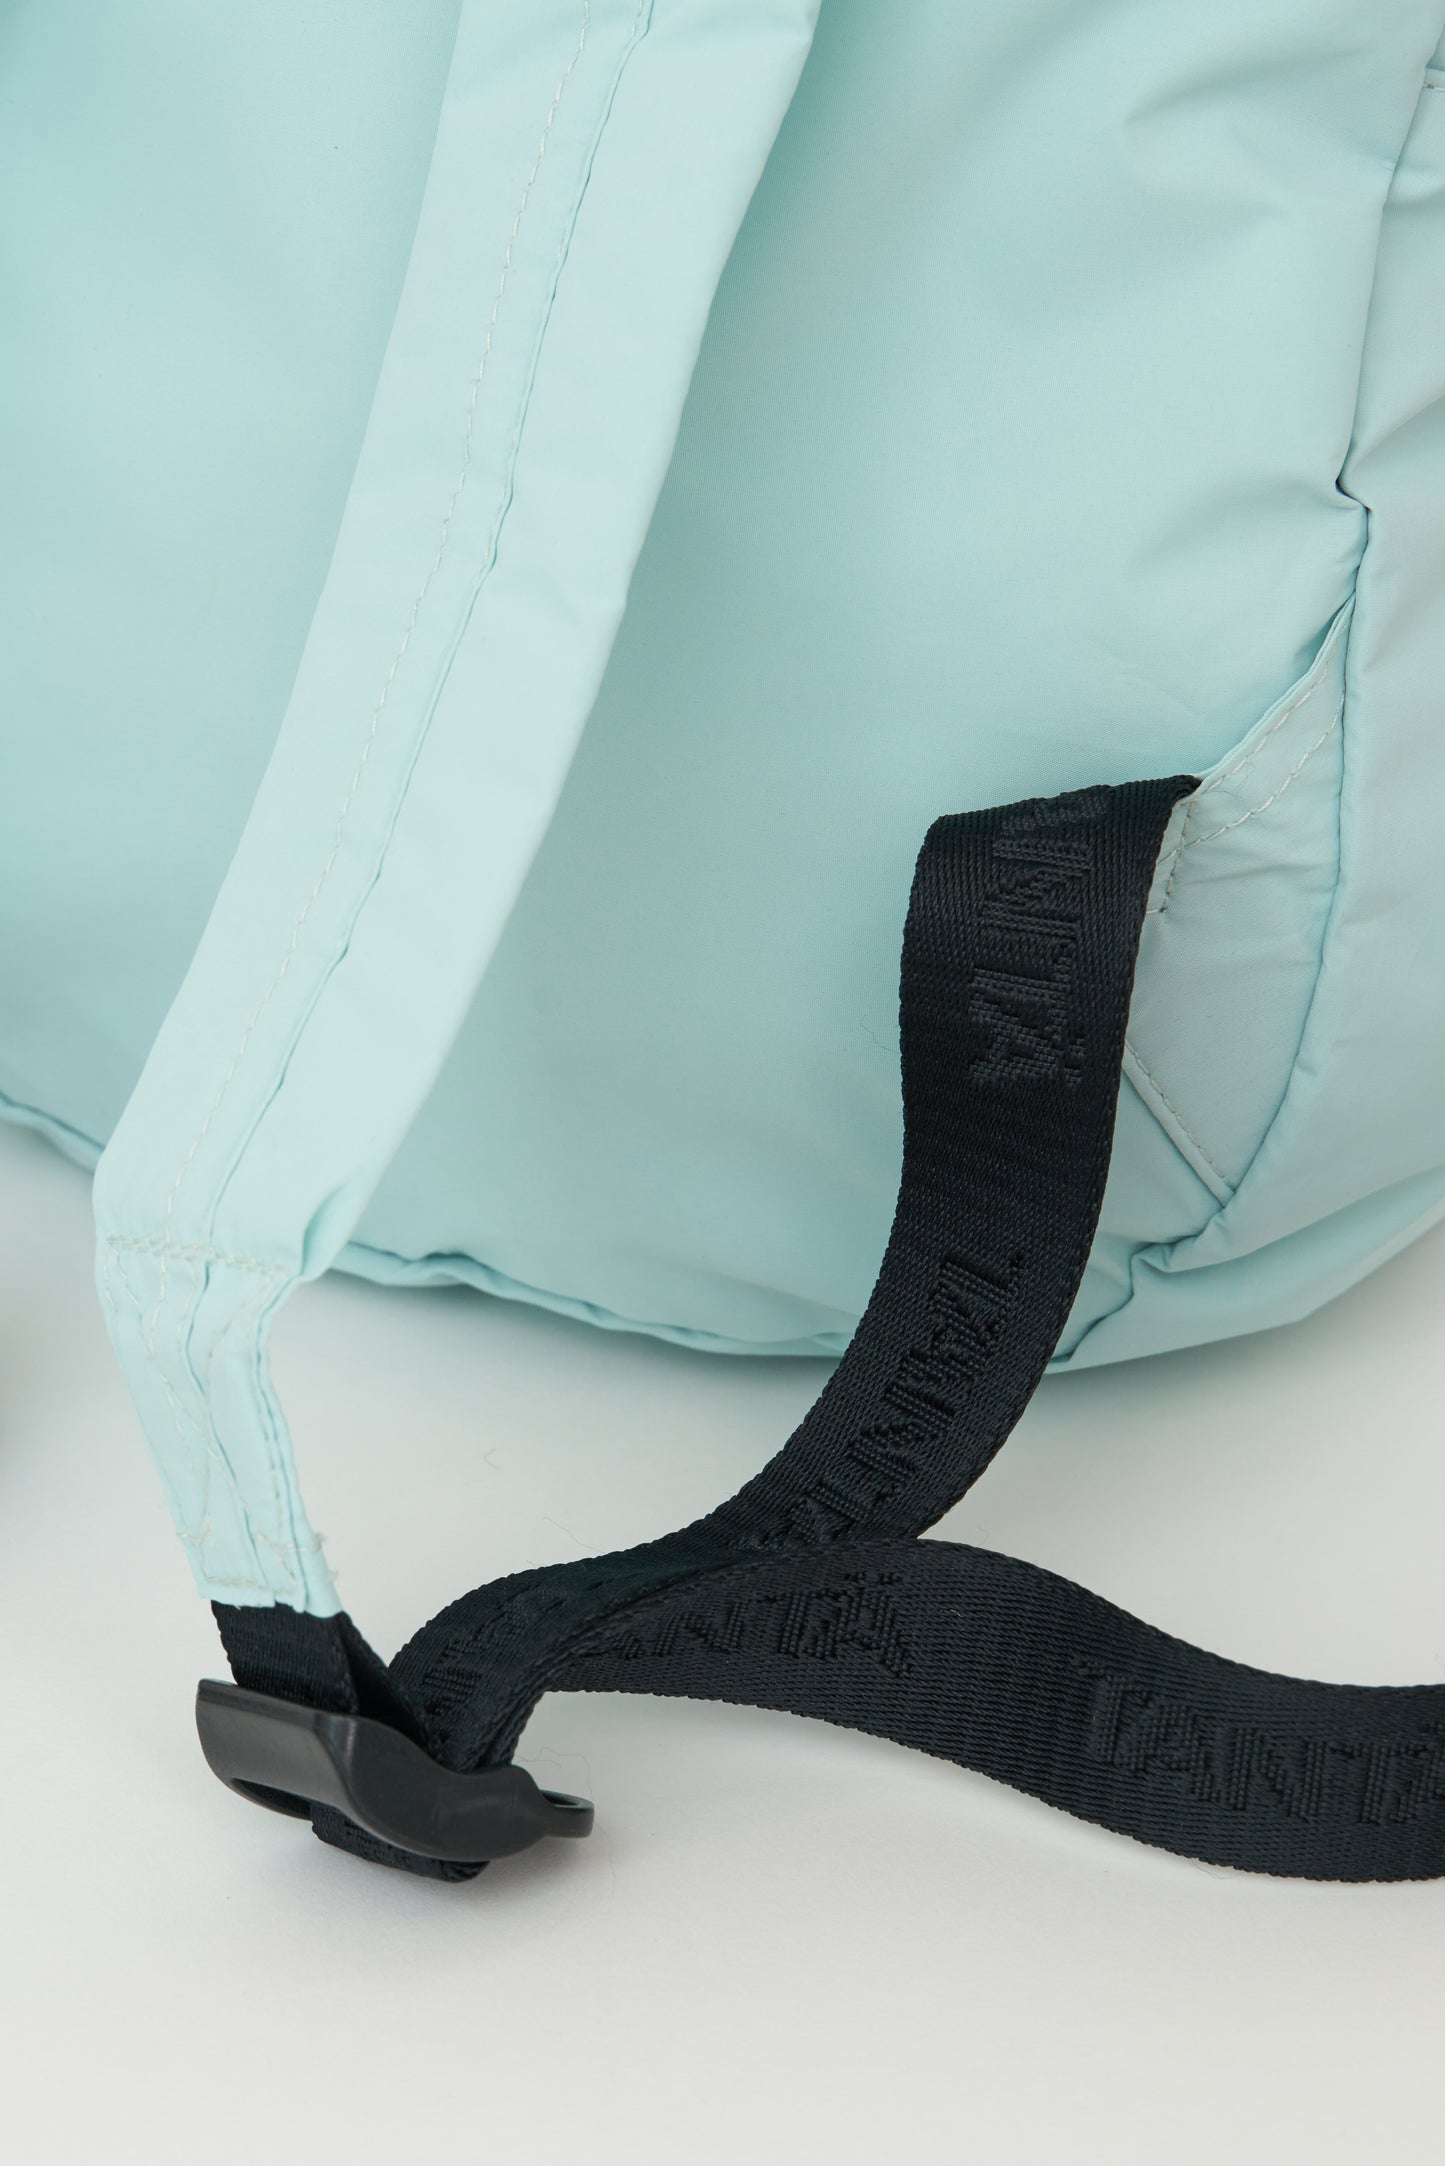 Debesis backpack - Blue Glow